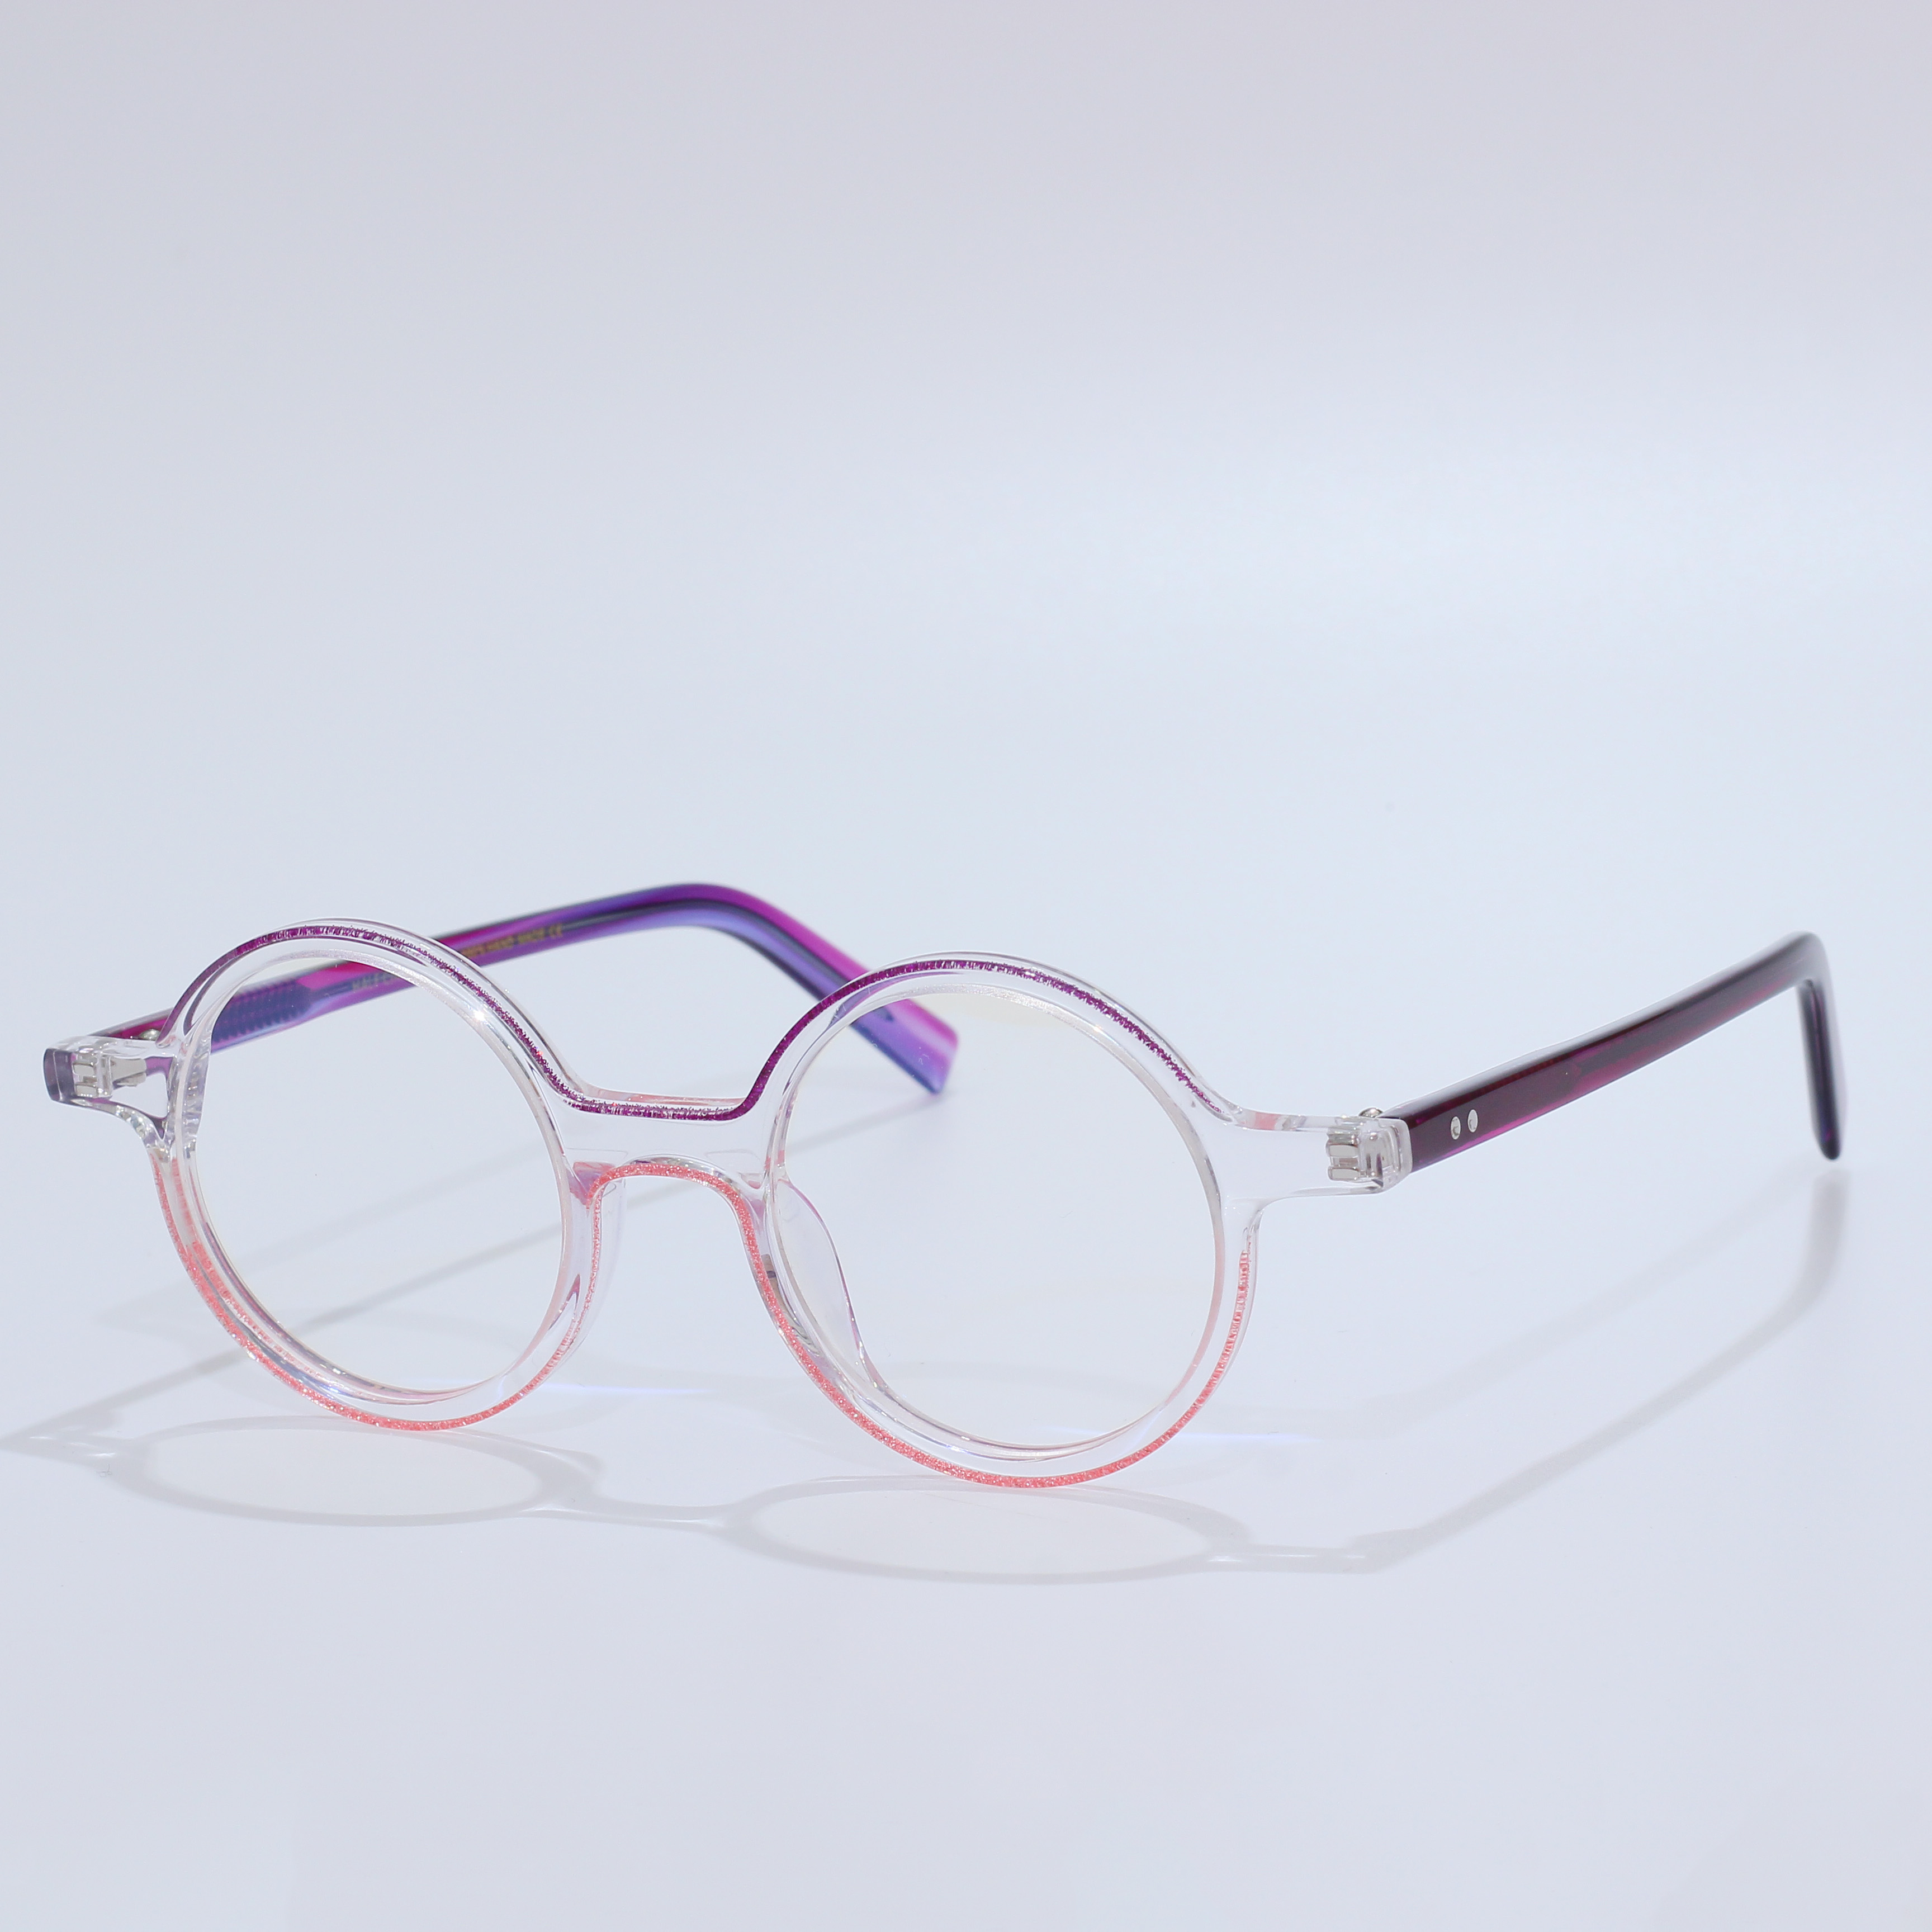 High Quality Acetate Optical Prescription Glasses Frame (7)